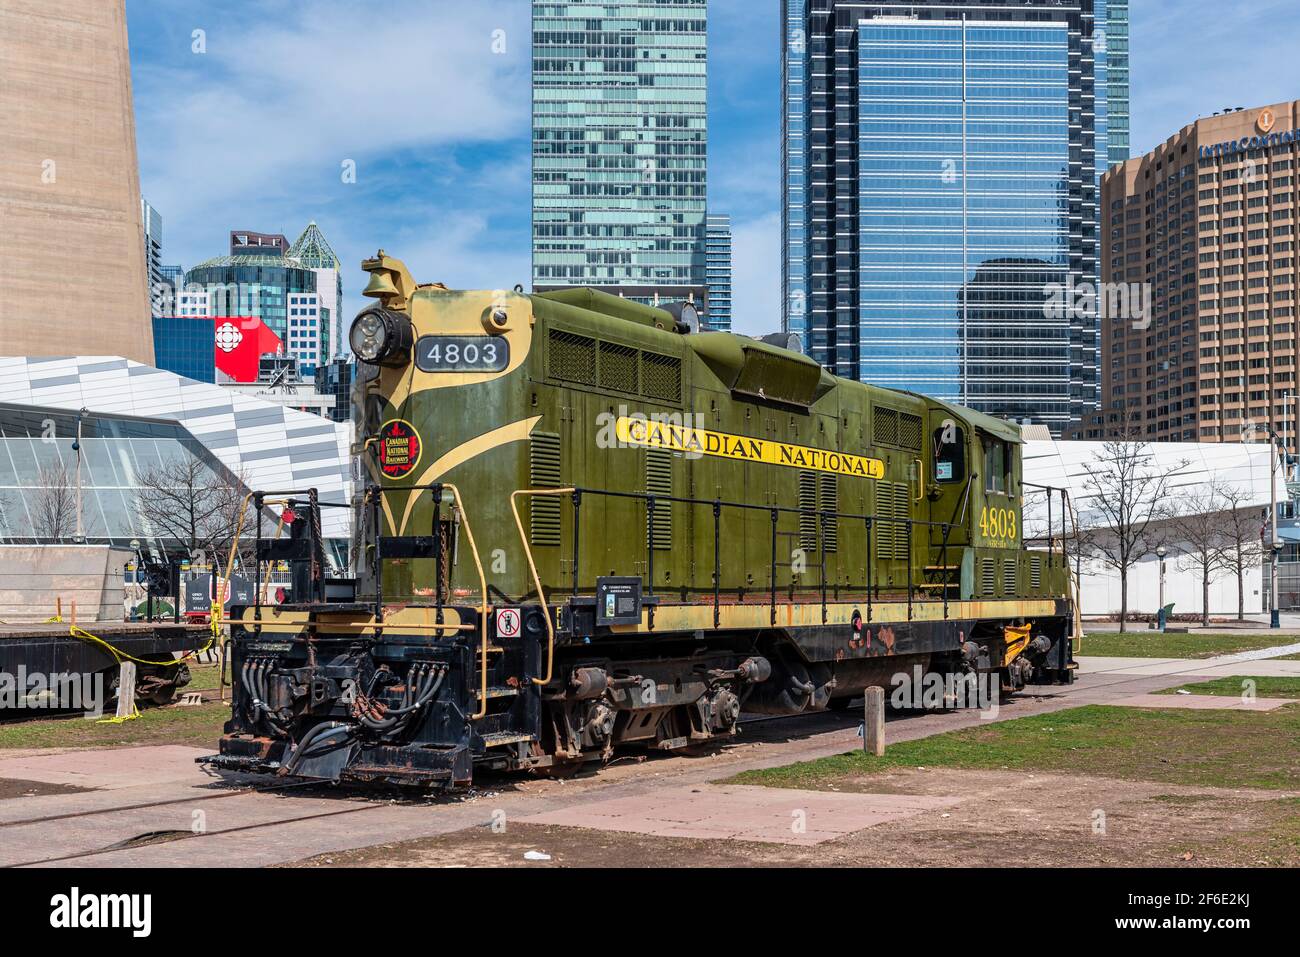 Vider le musée du chemin de fer de Toronto dans le parc Roundhouse dans le Quartier du centre-ville en raison de la pandémie Covid-19 Banque D'Images